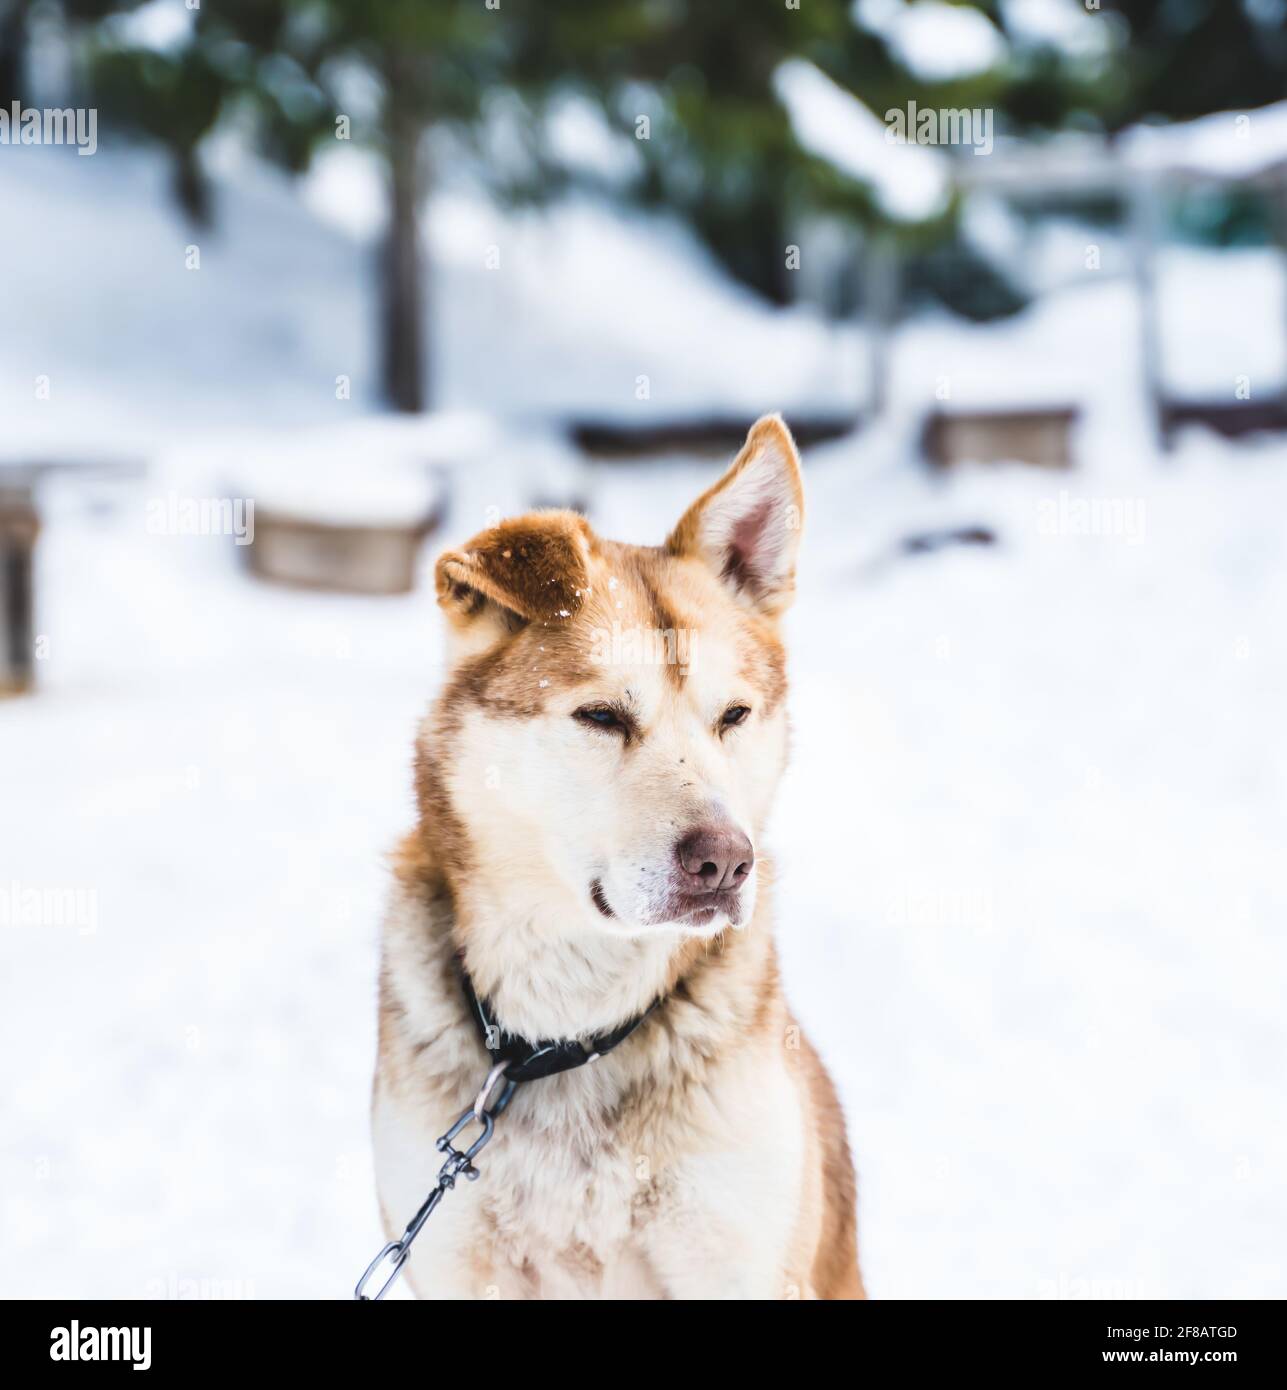 Primo piano di un cane da slitta Husky giallo e arancione dell'Alaska che riposa nell'allevamento. Foto Stock